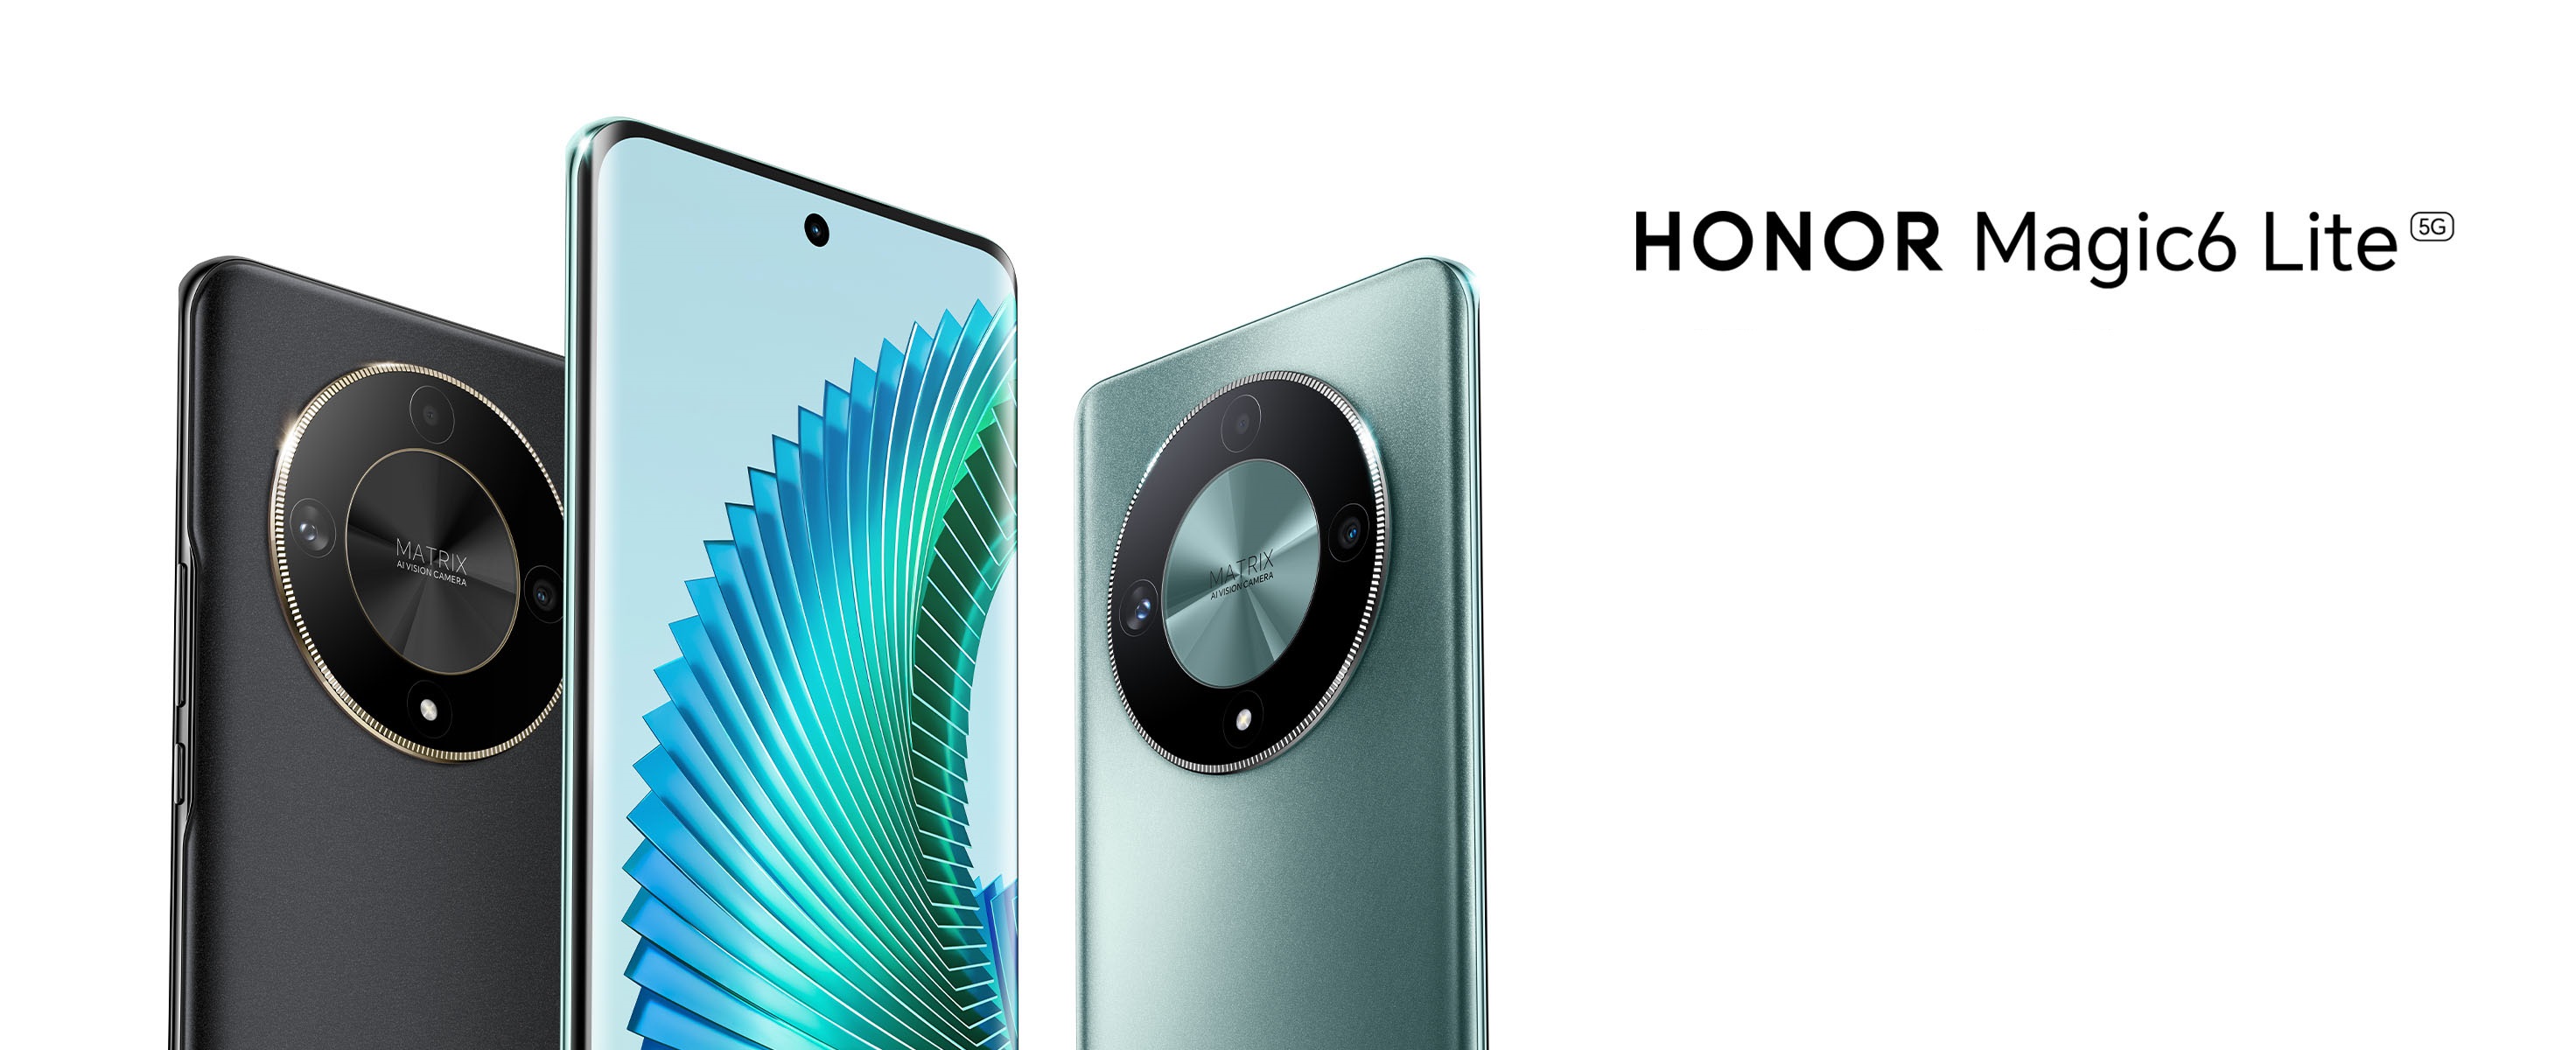 صورة الإعلان عن هاتف Honor Magic6 Lite الجديد بمواصفات رائعة وتصميم مميز